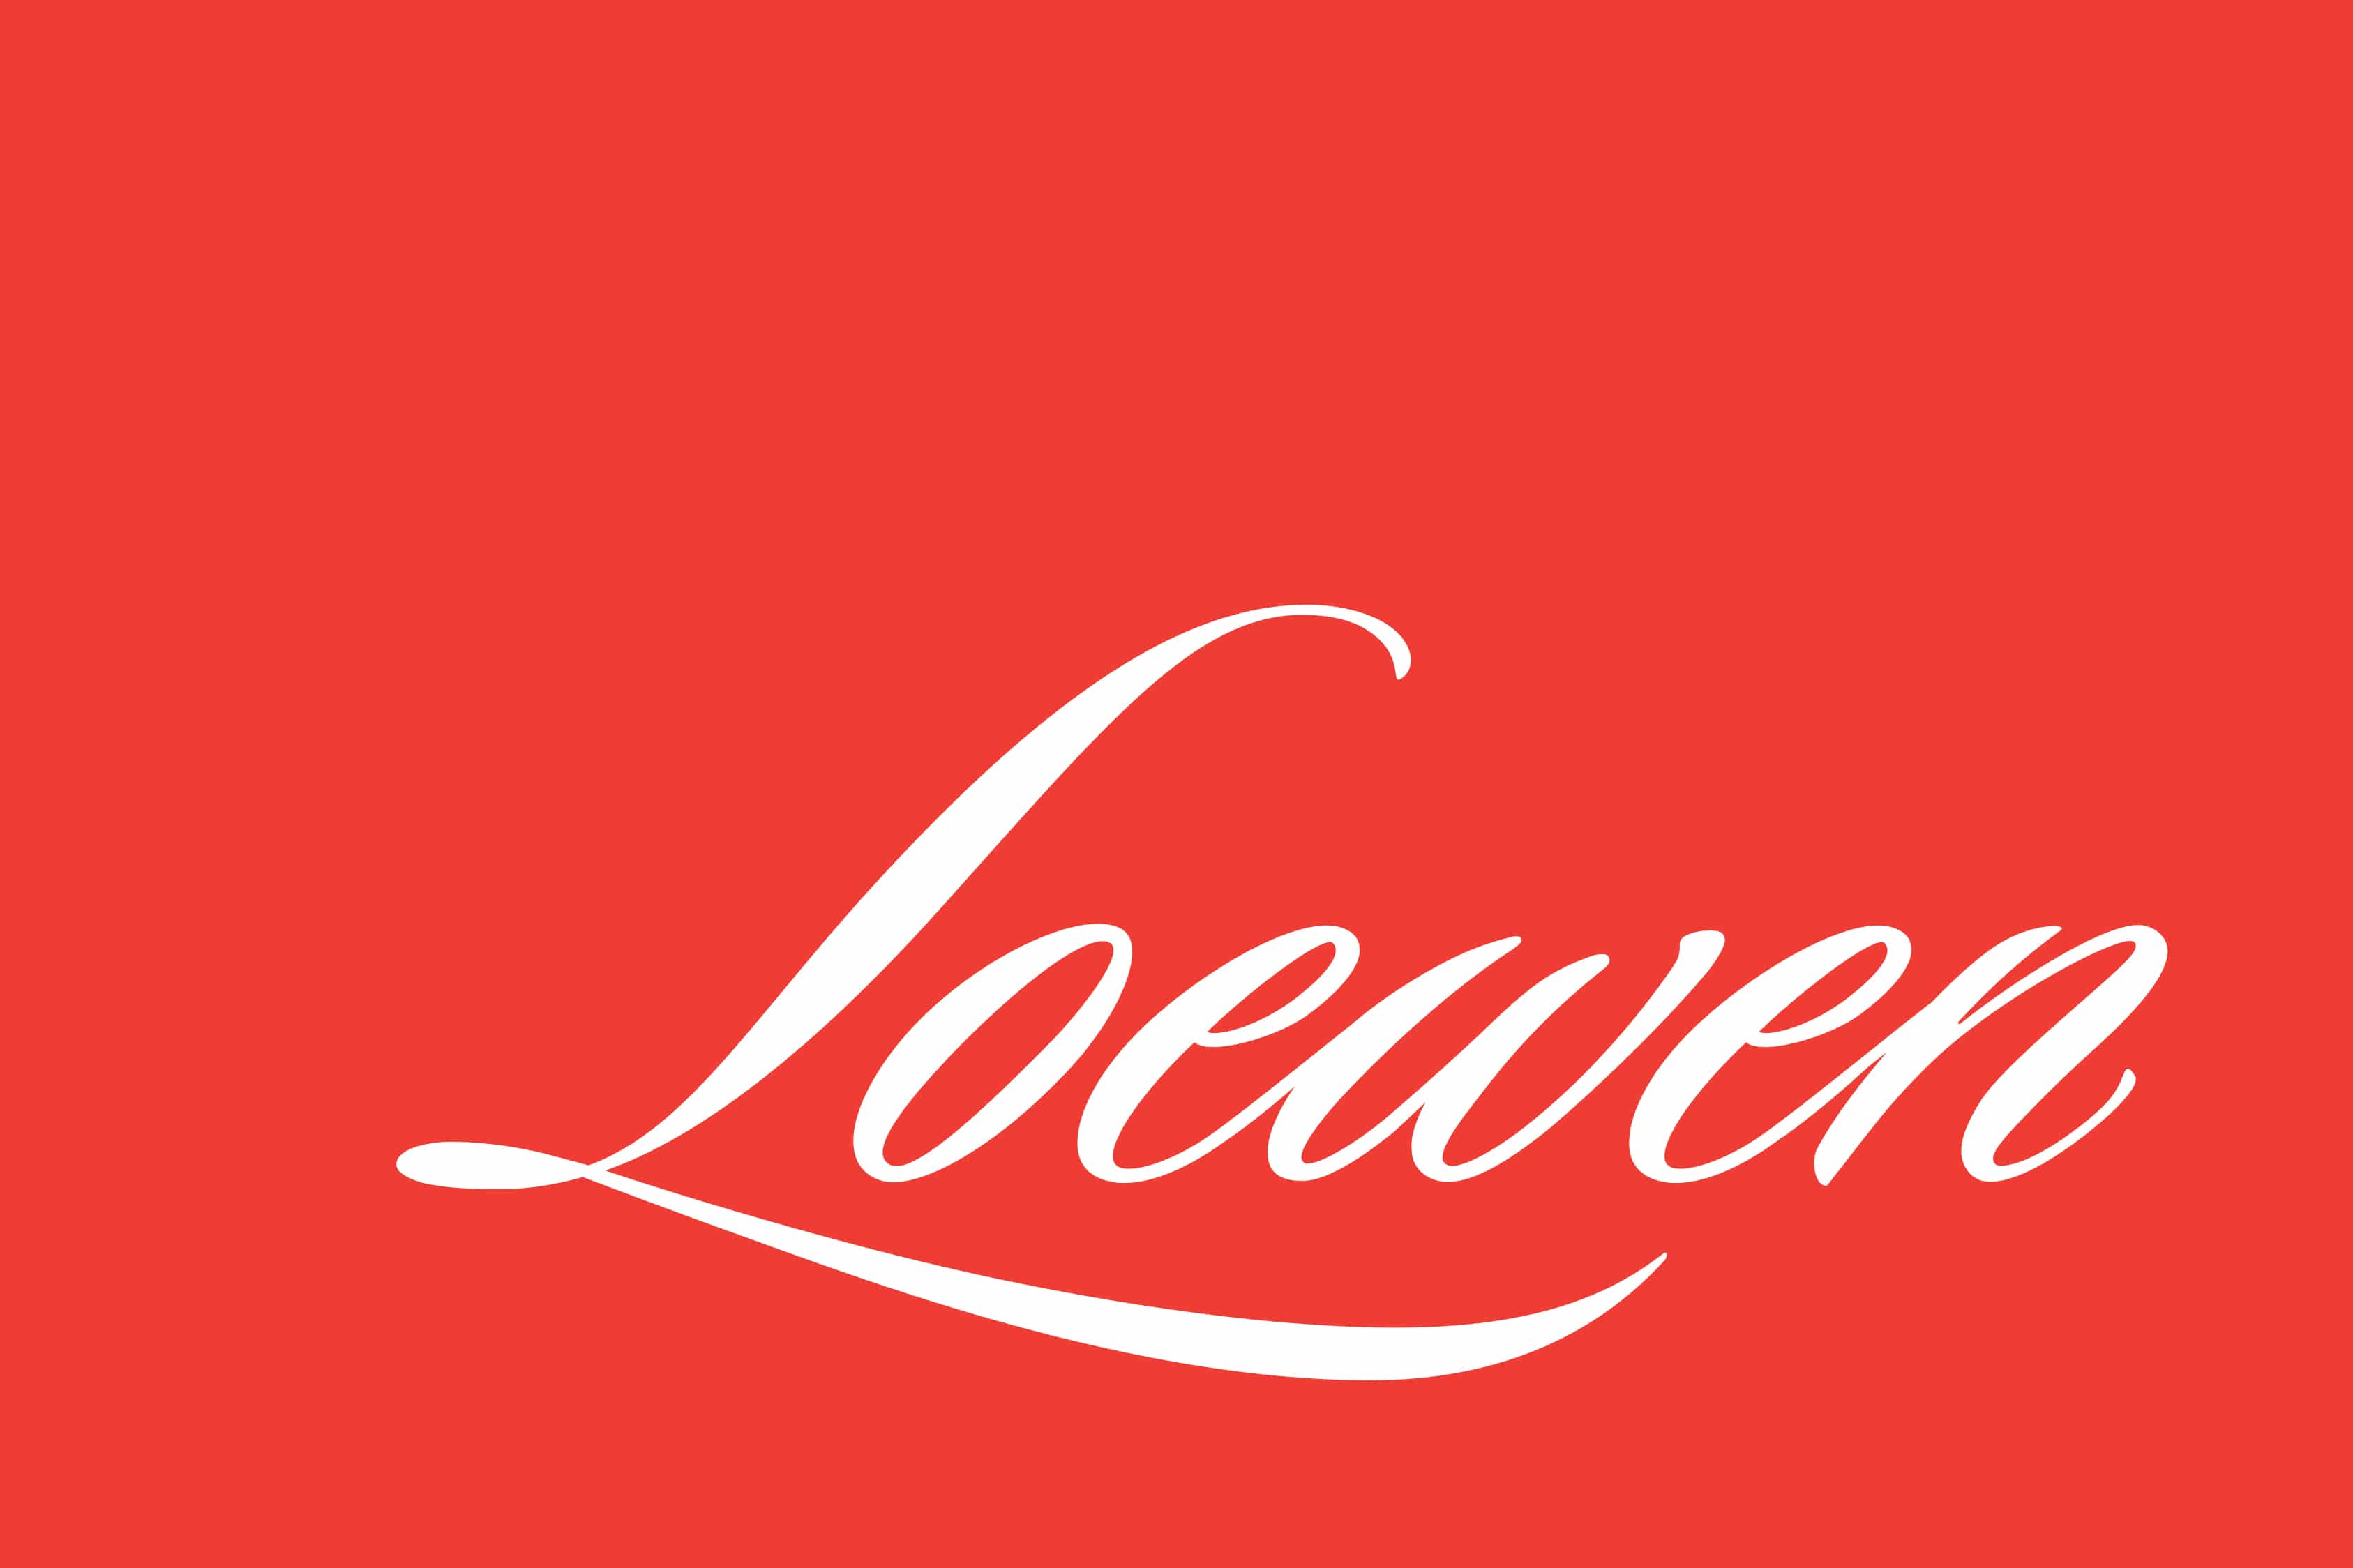 Loewen windows and doors logo